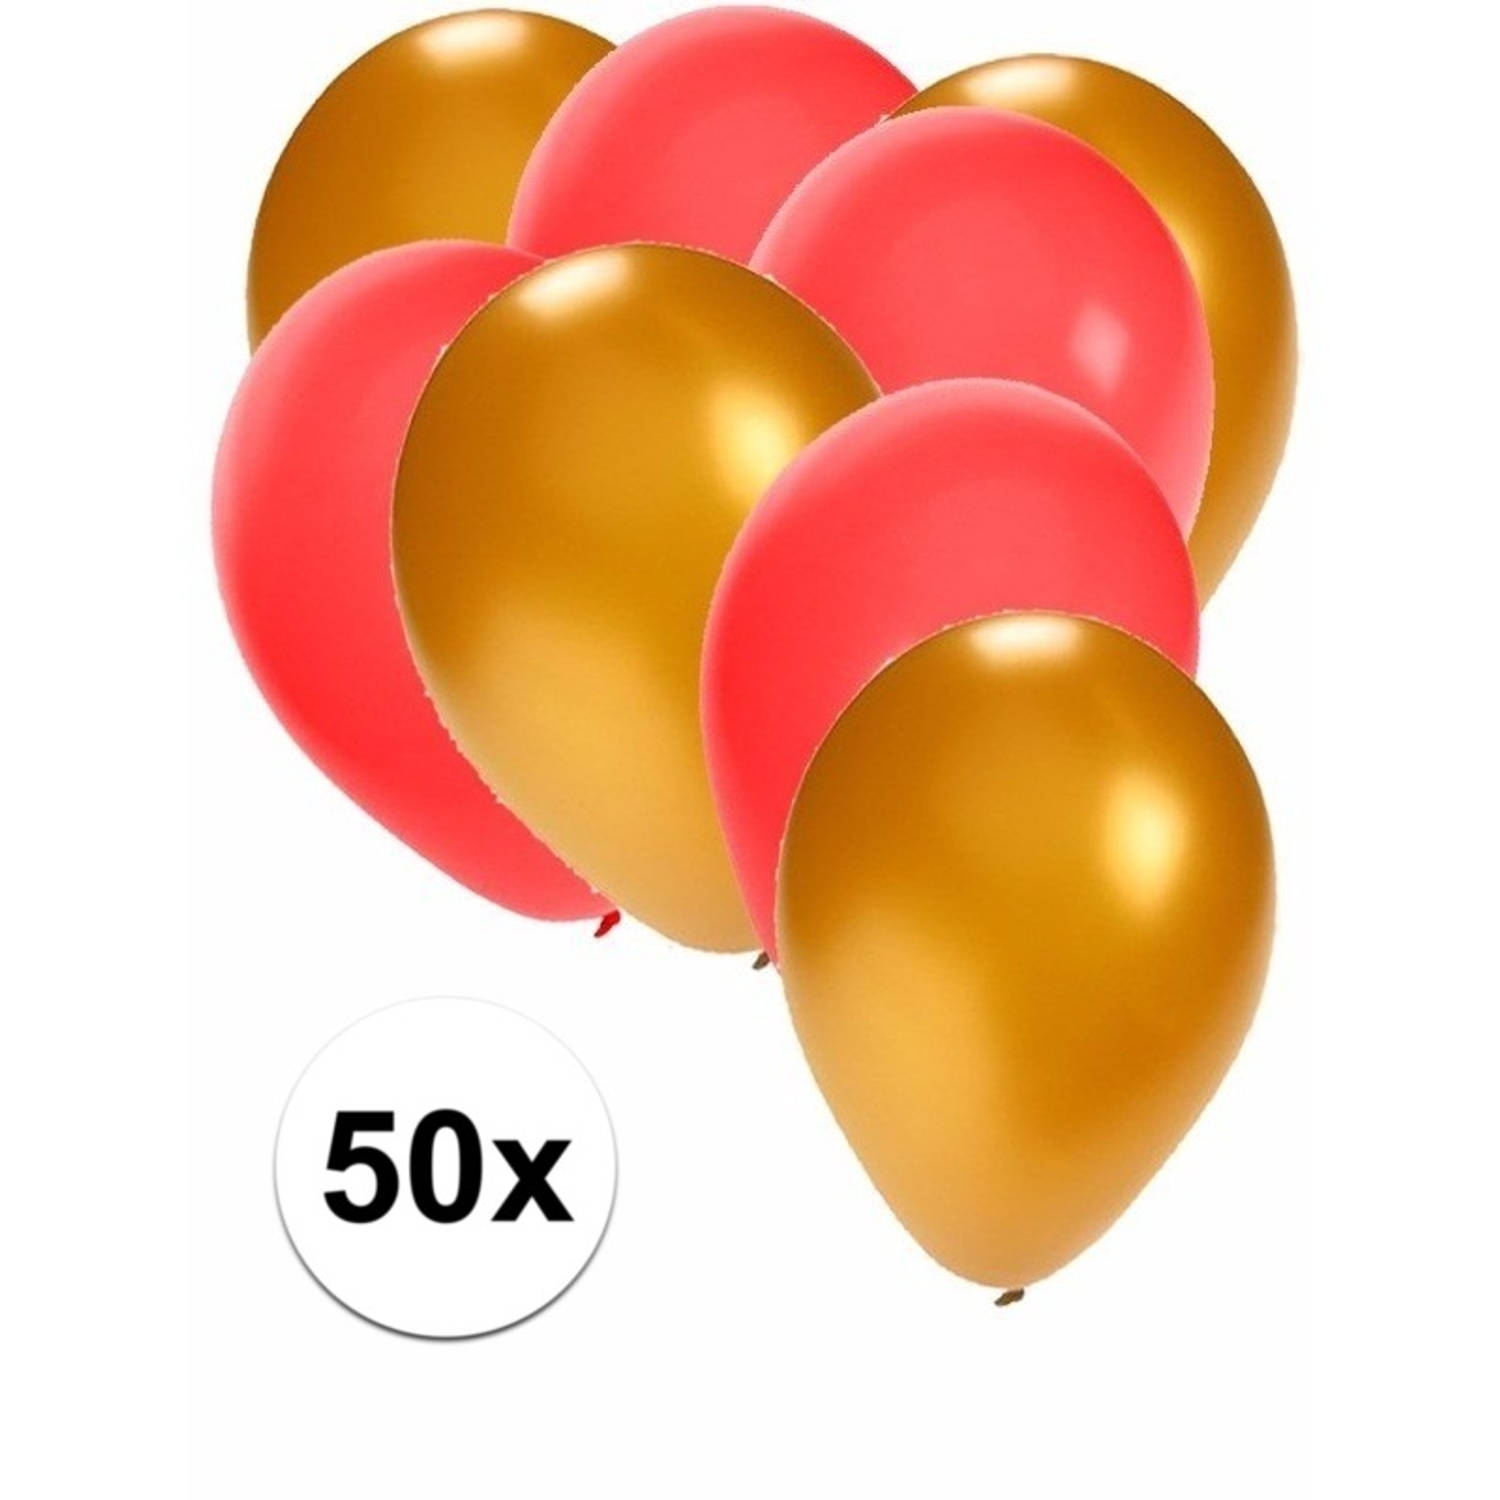 50x en rode ballonnen - Ballonnen |